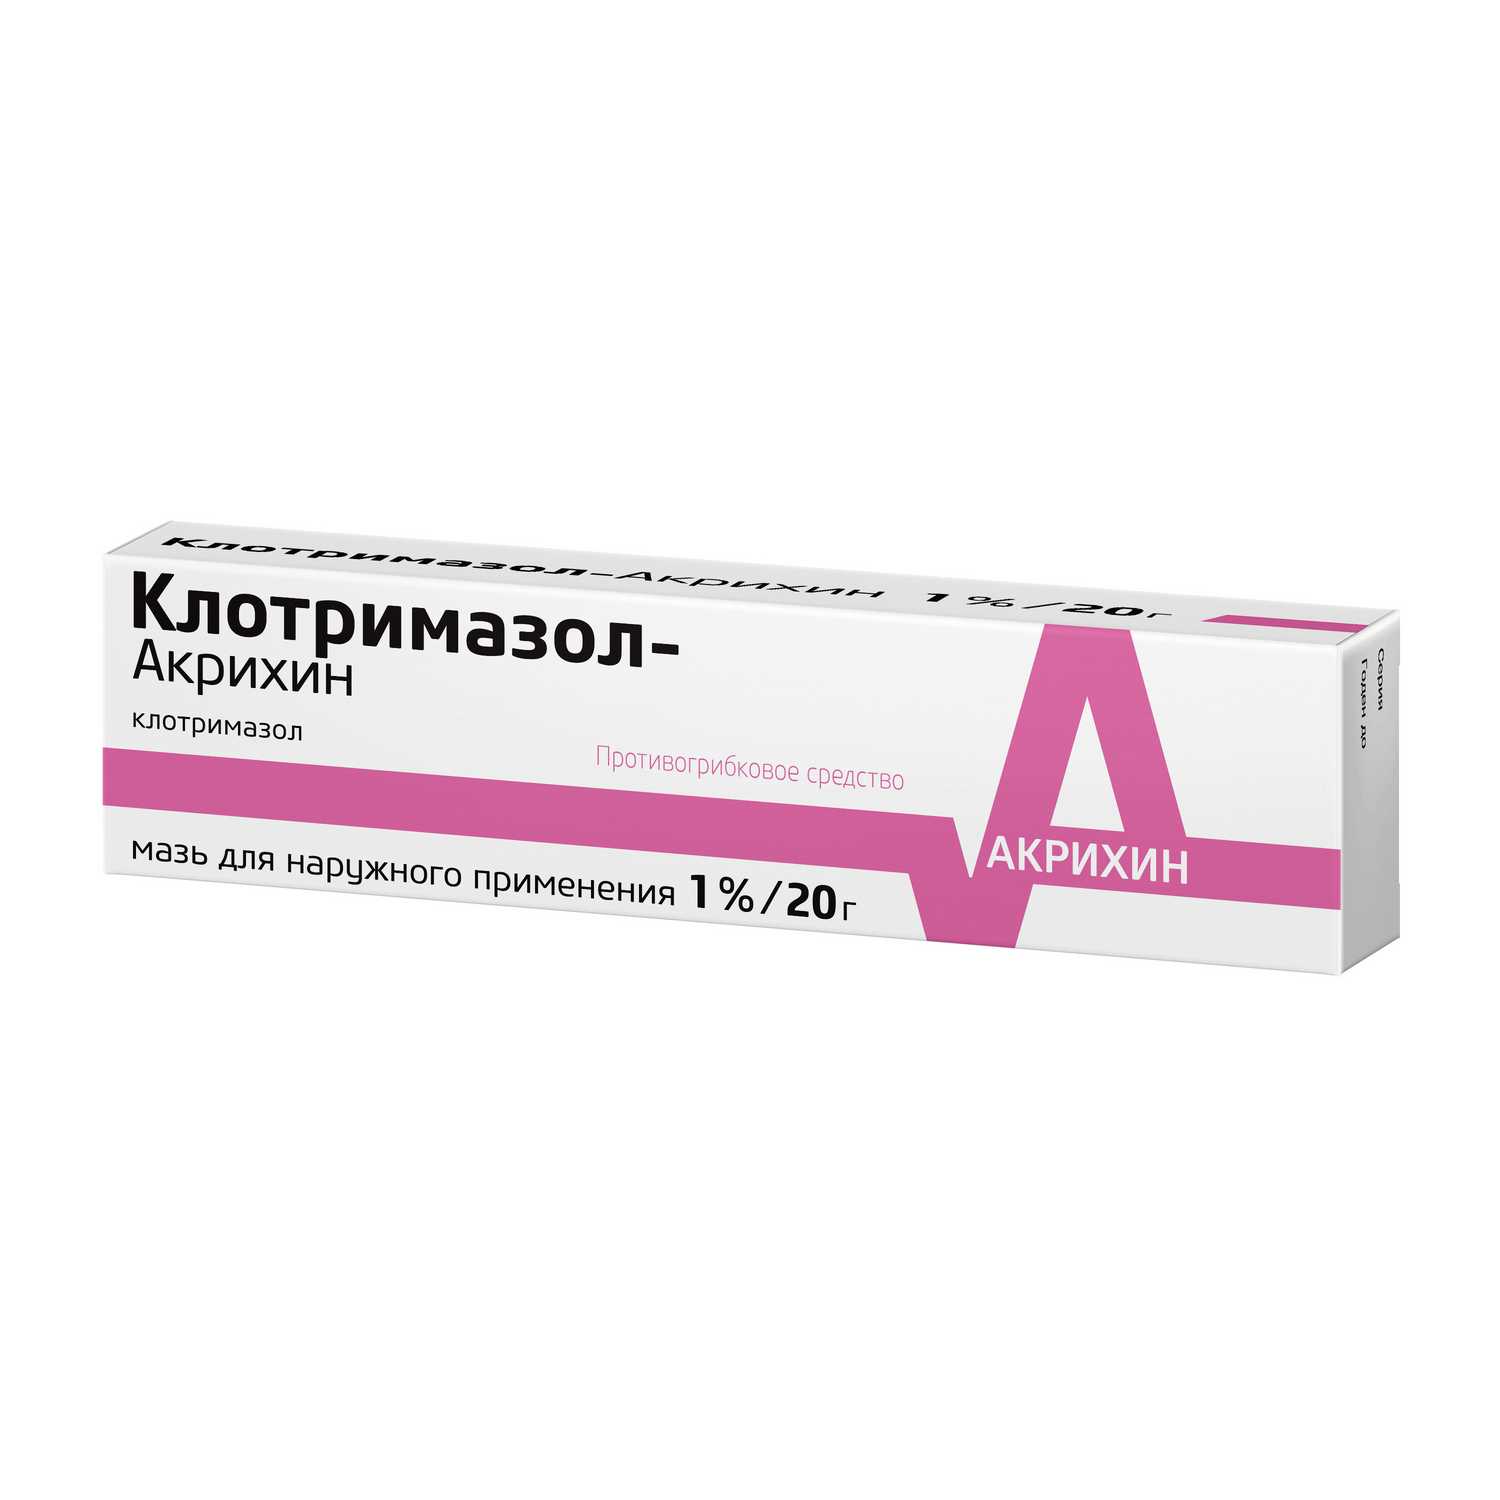 Купить Клотримазол-Акрихин мазь 1% 20 г (клотримазол) по выгодной цене .